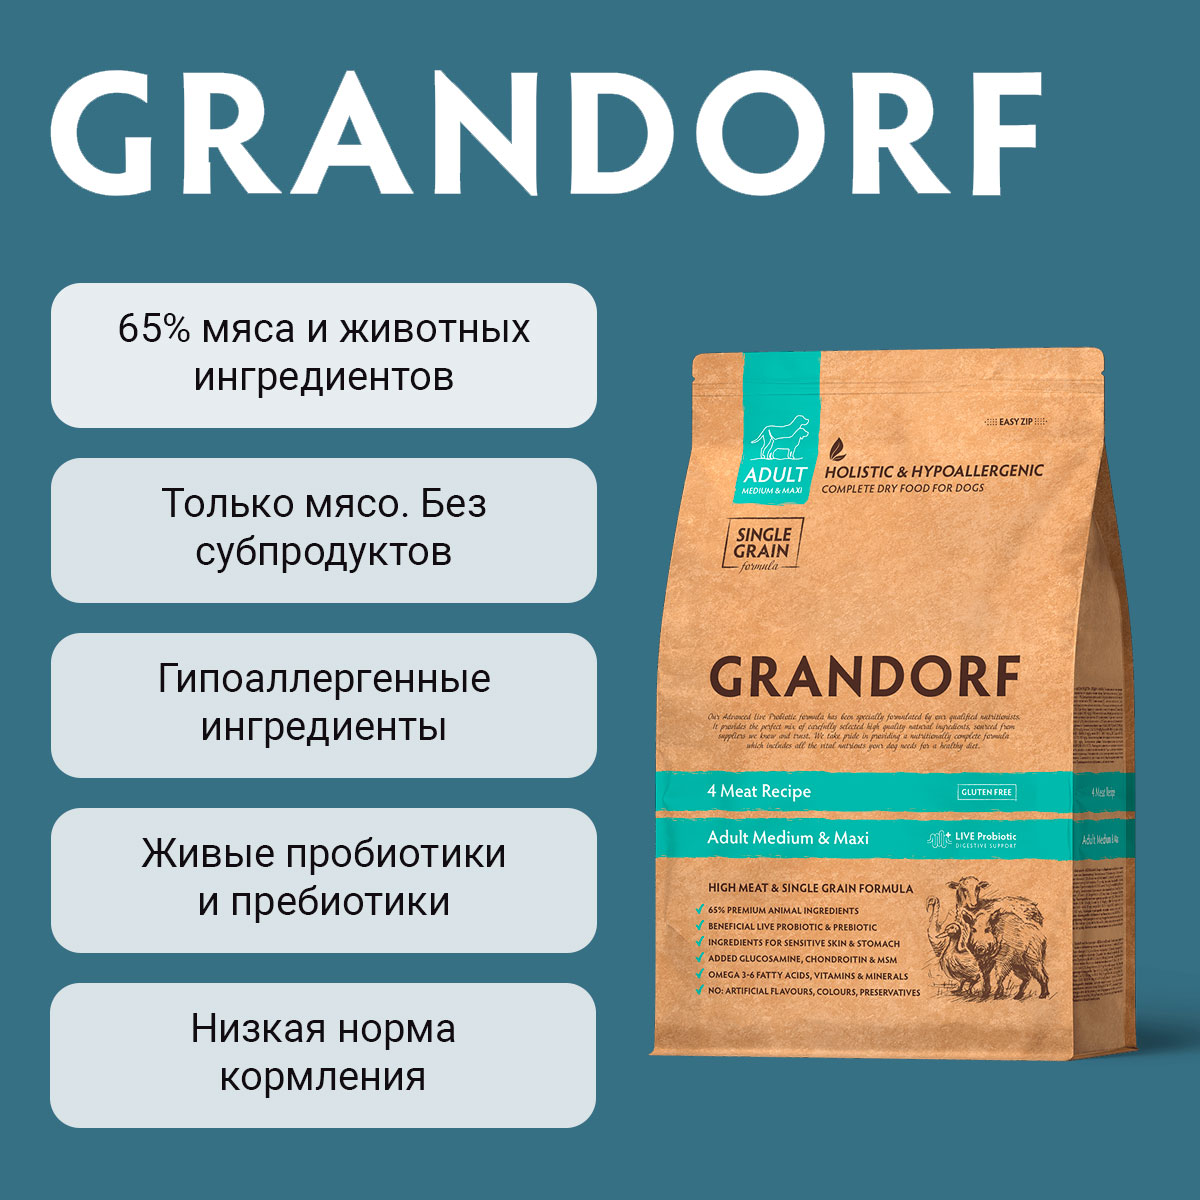 Grandorf Adult Medium & Maxi 4 Meat Recipe